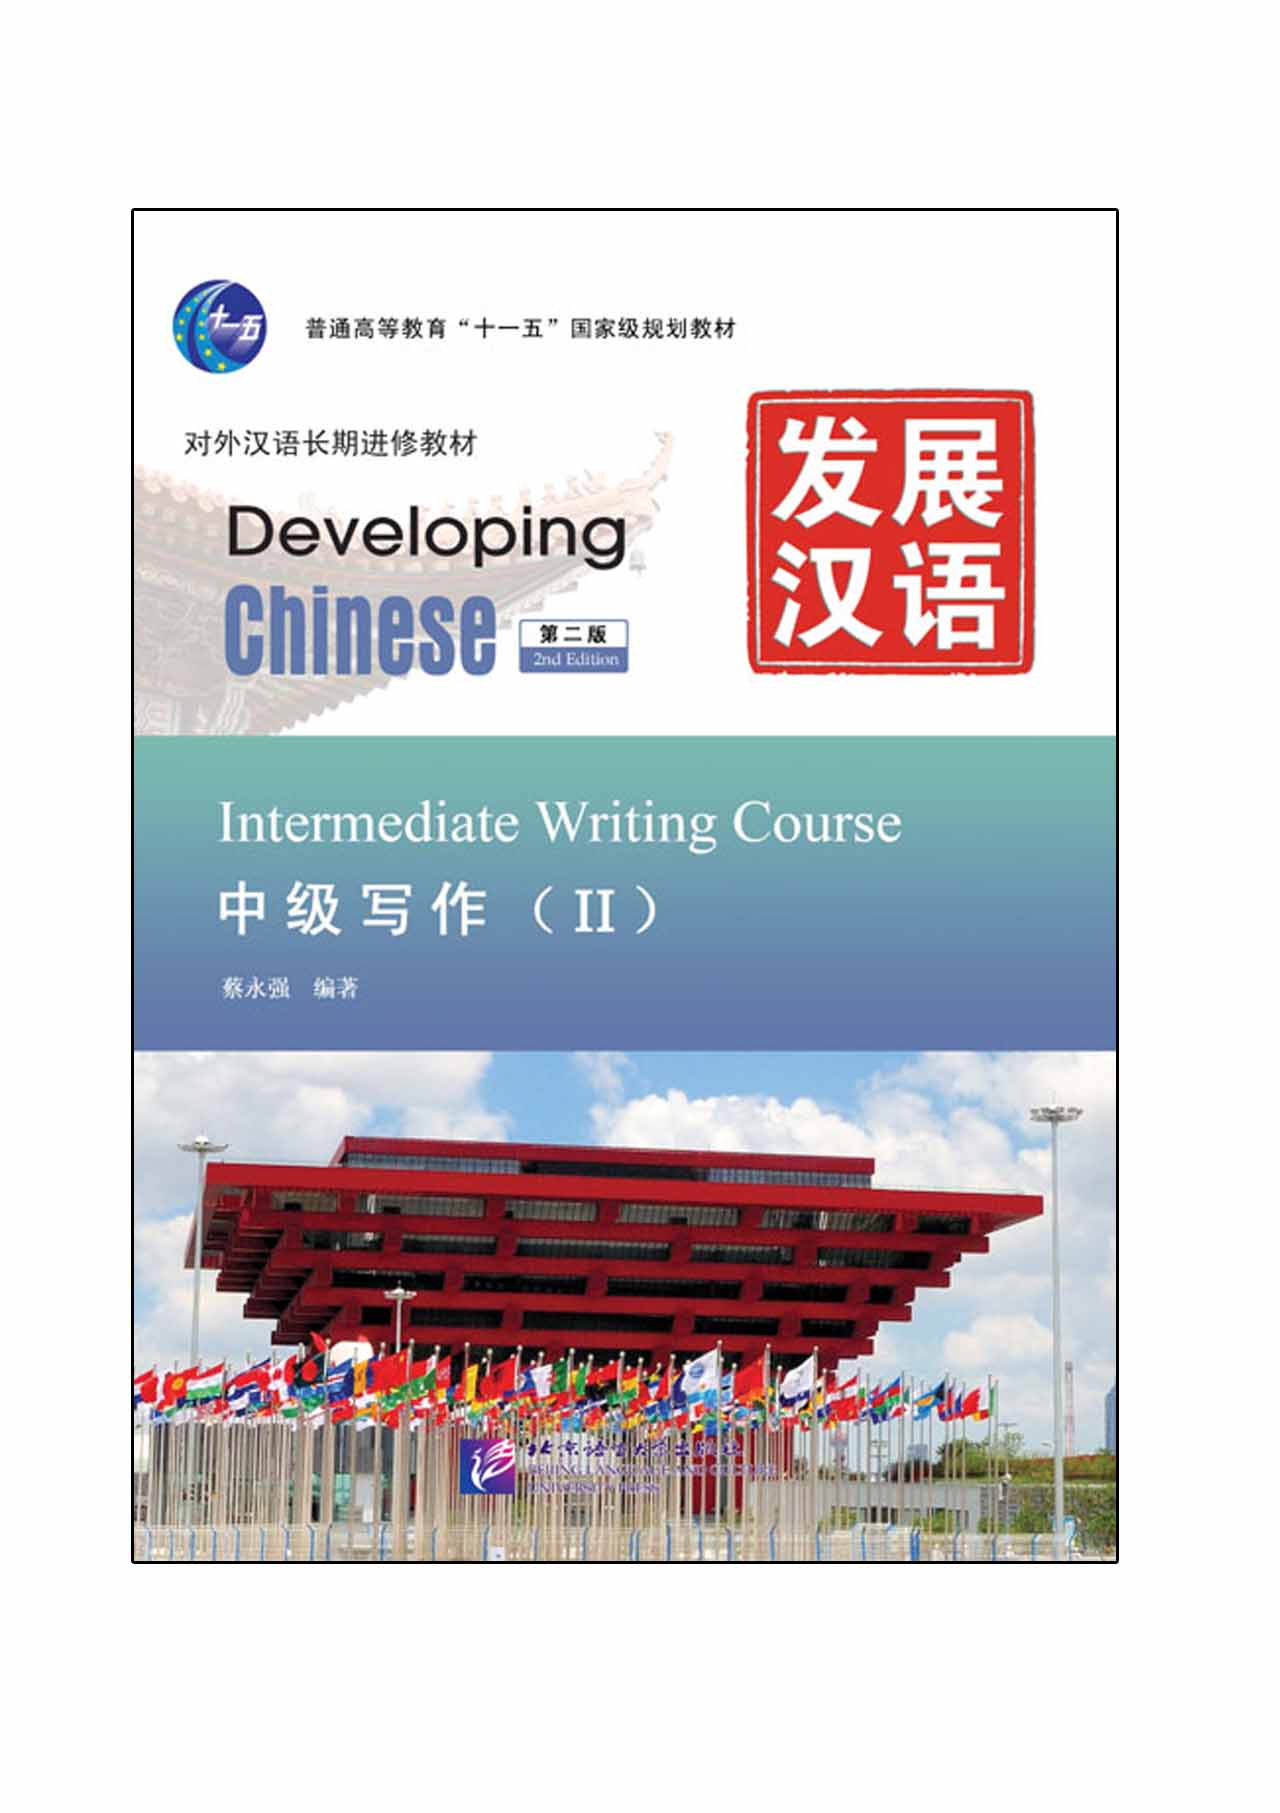 แบบเรียนภาษาจีน Developing Chinese (2nd Edition) Intermediate Writing Course Ⅱ 发展汉语（第2版）中级写作（Ⅱ）